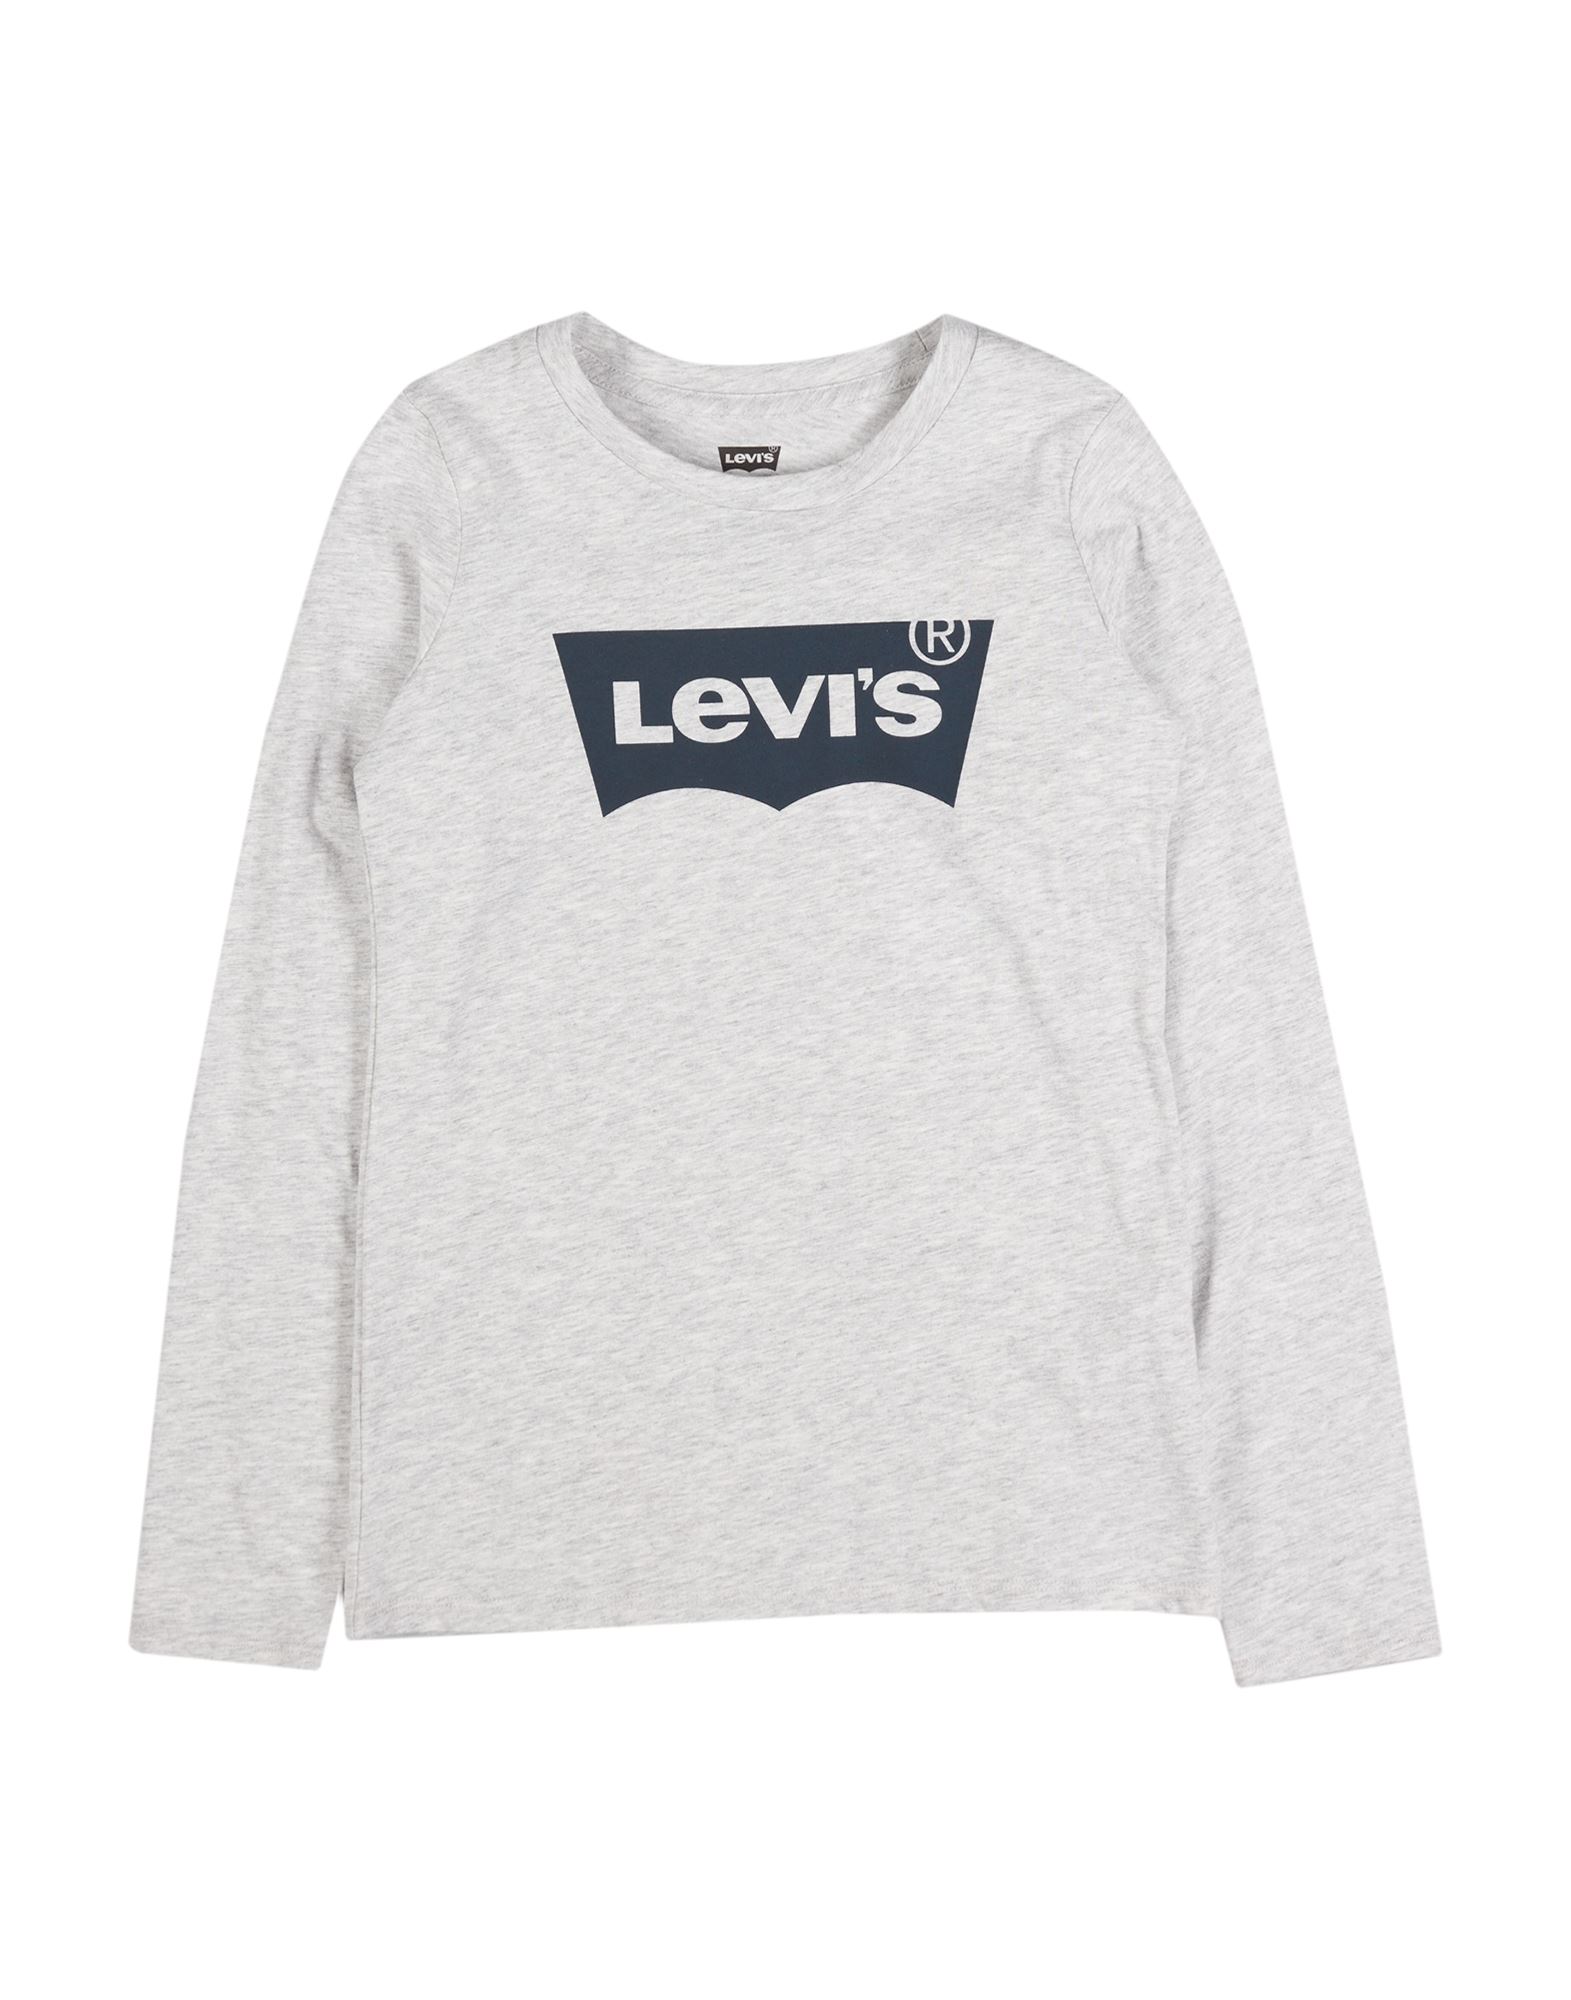 LEVI'S T-shirts Kinder Grau von LEVI'S